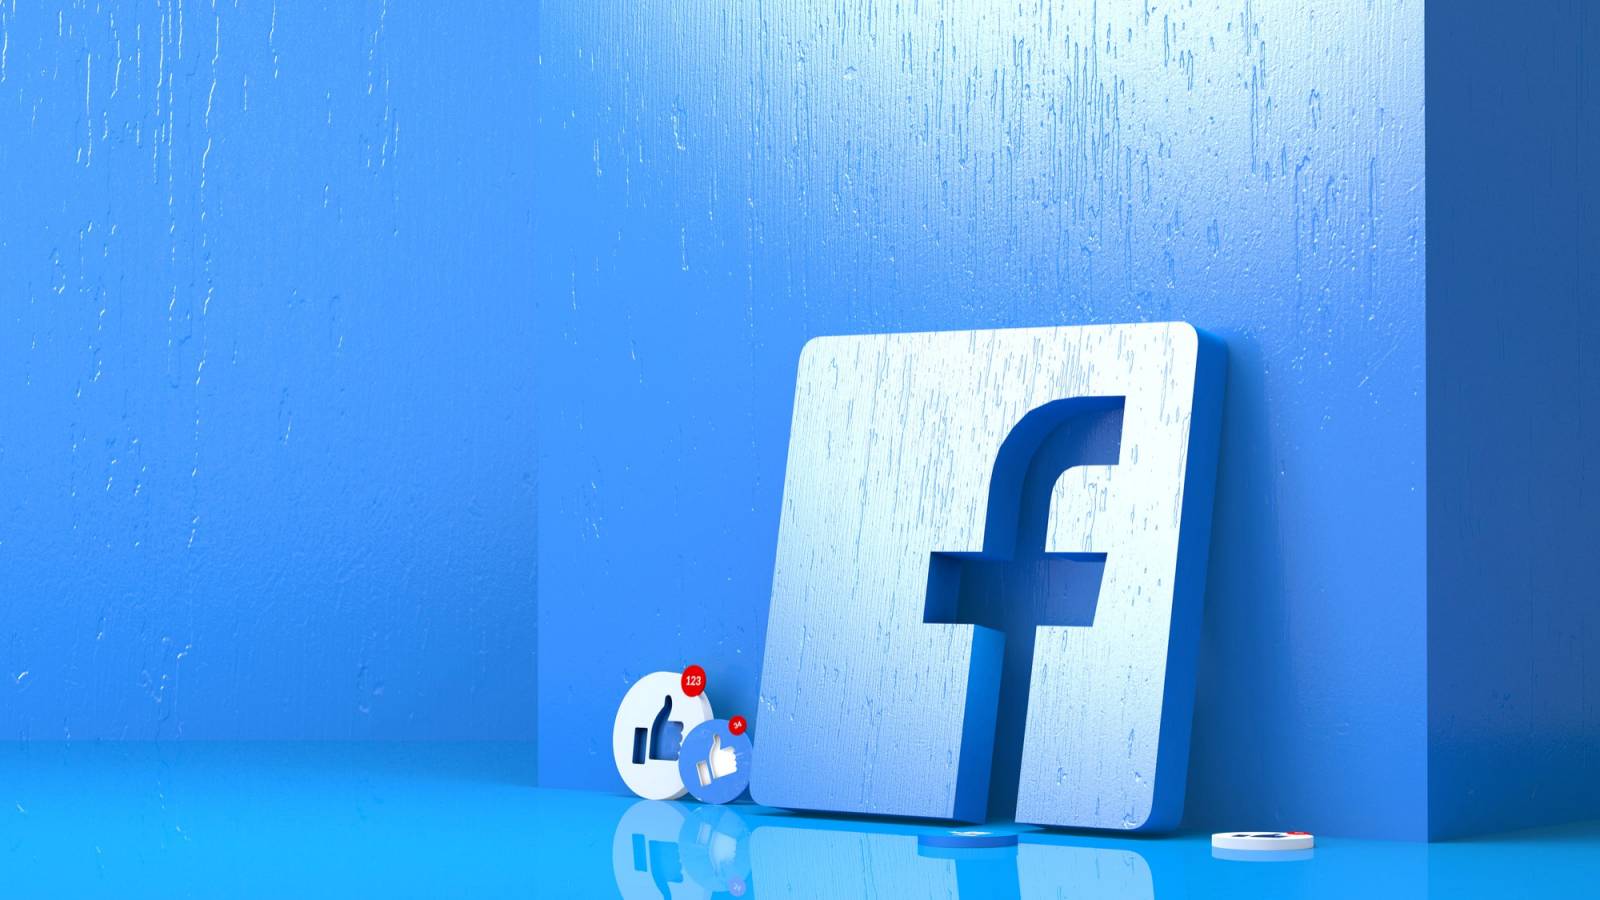 Facebook extreem gevaarlijk probleem treft groot aantal mensen